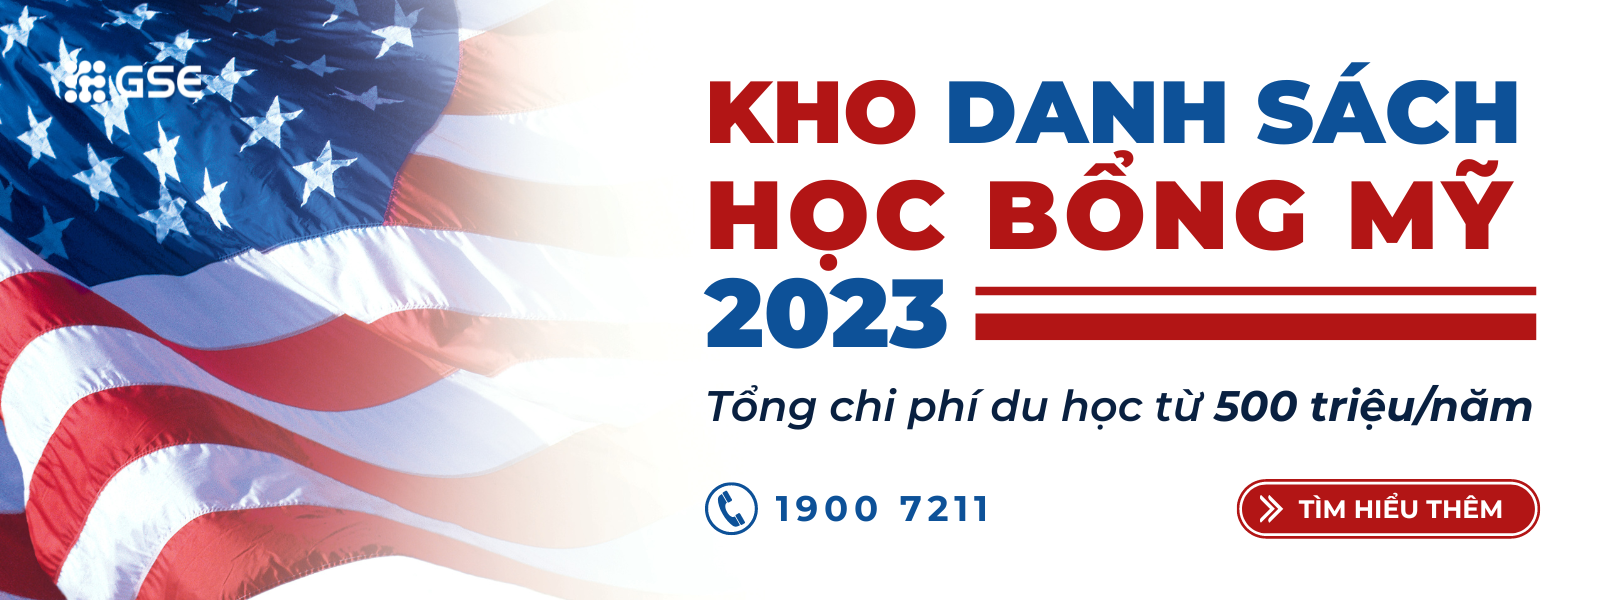 Hoc Bong Du Hoc My 2023 Tu Van Du Hoc Gse 1600x600 1